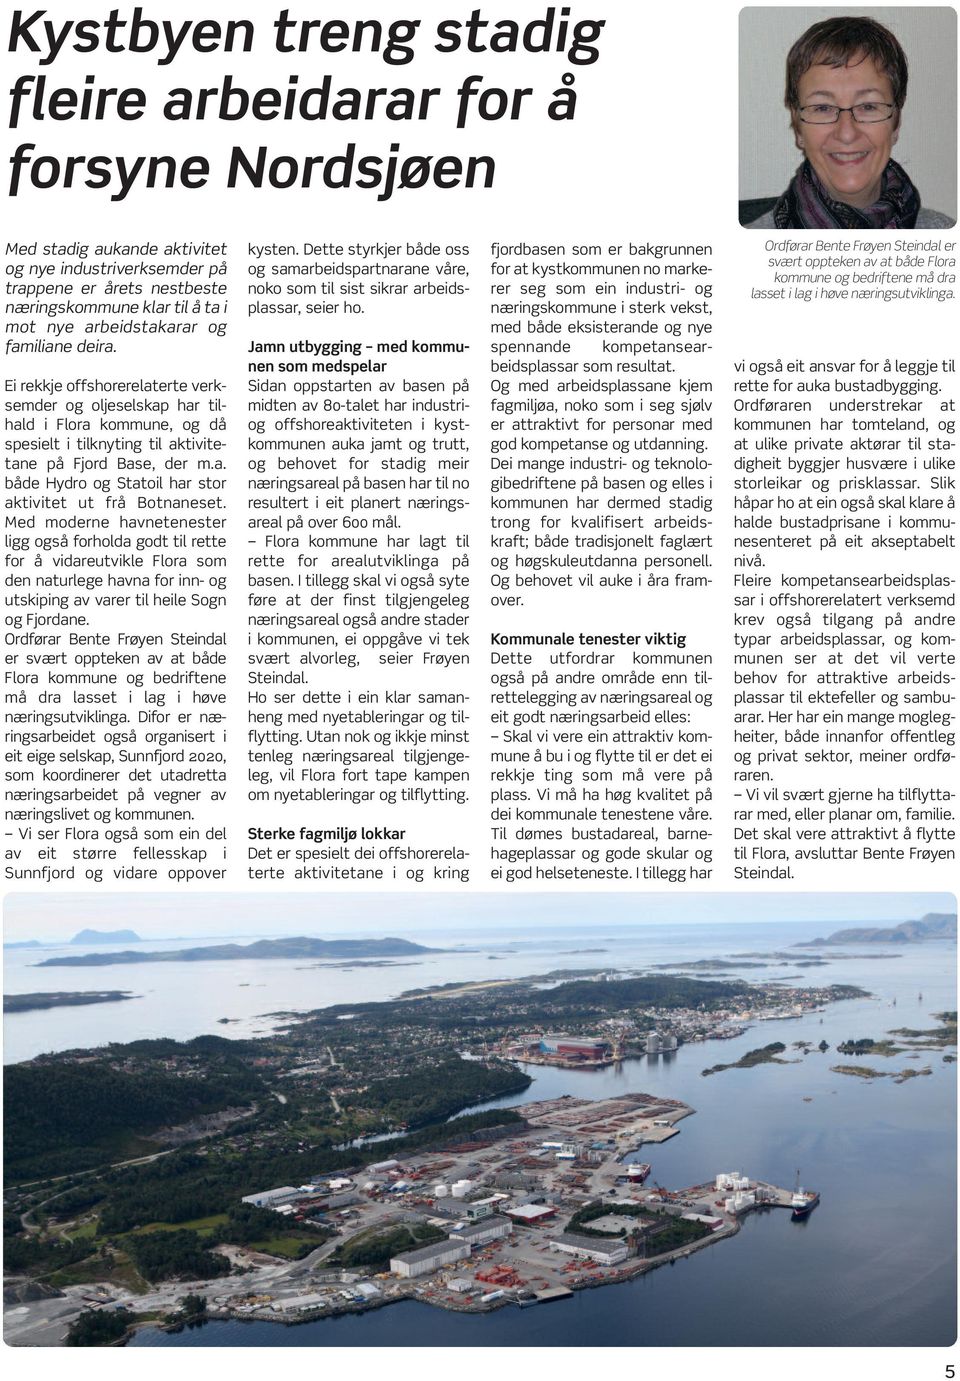 Med moderne havnetenester ligg også forholda godt til rette for å vidareutvikle Flora som den naturlege havna for inn- og utskiping av varer til heile Sogn og Fjordane.